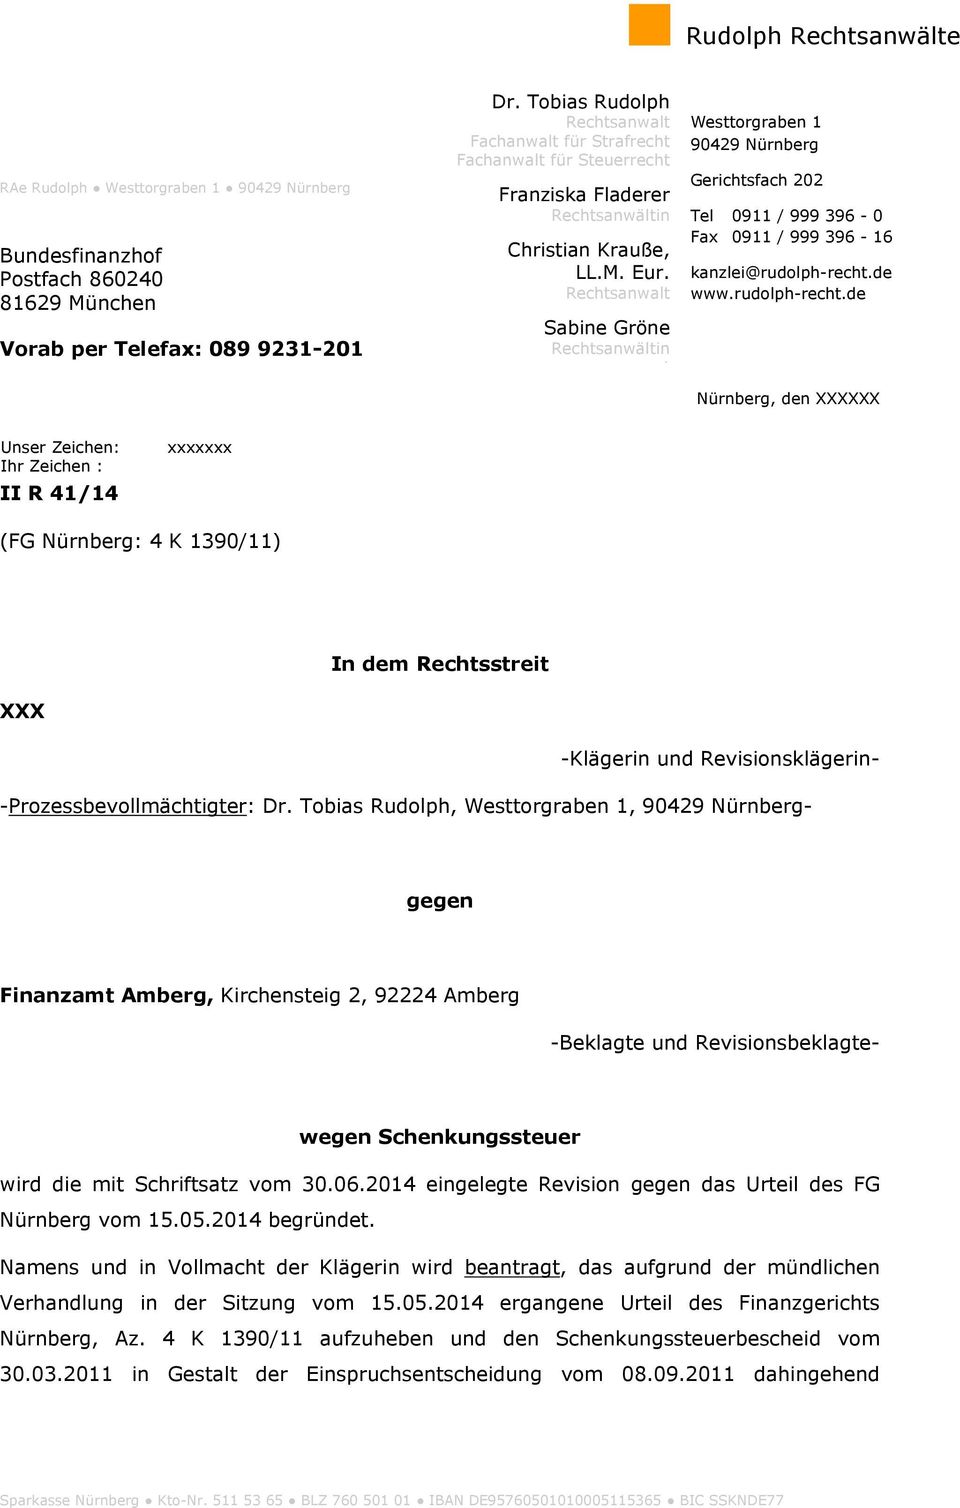 Rechtsanwalt Sabine Gröne Rechtsanwältin t Westtorgraben 1 90429 Nürnberg Gerichtsfach 202 Tel 0911 / 999 396-0 Fax 0911 / 999 396-16 kanzlei@rudolph-recht.